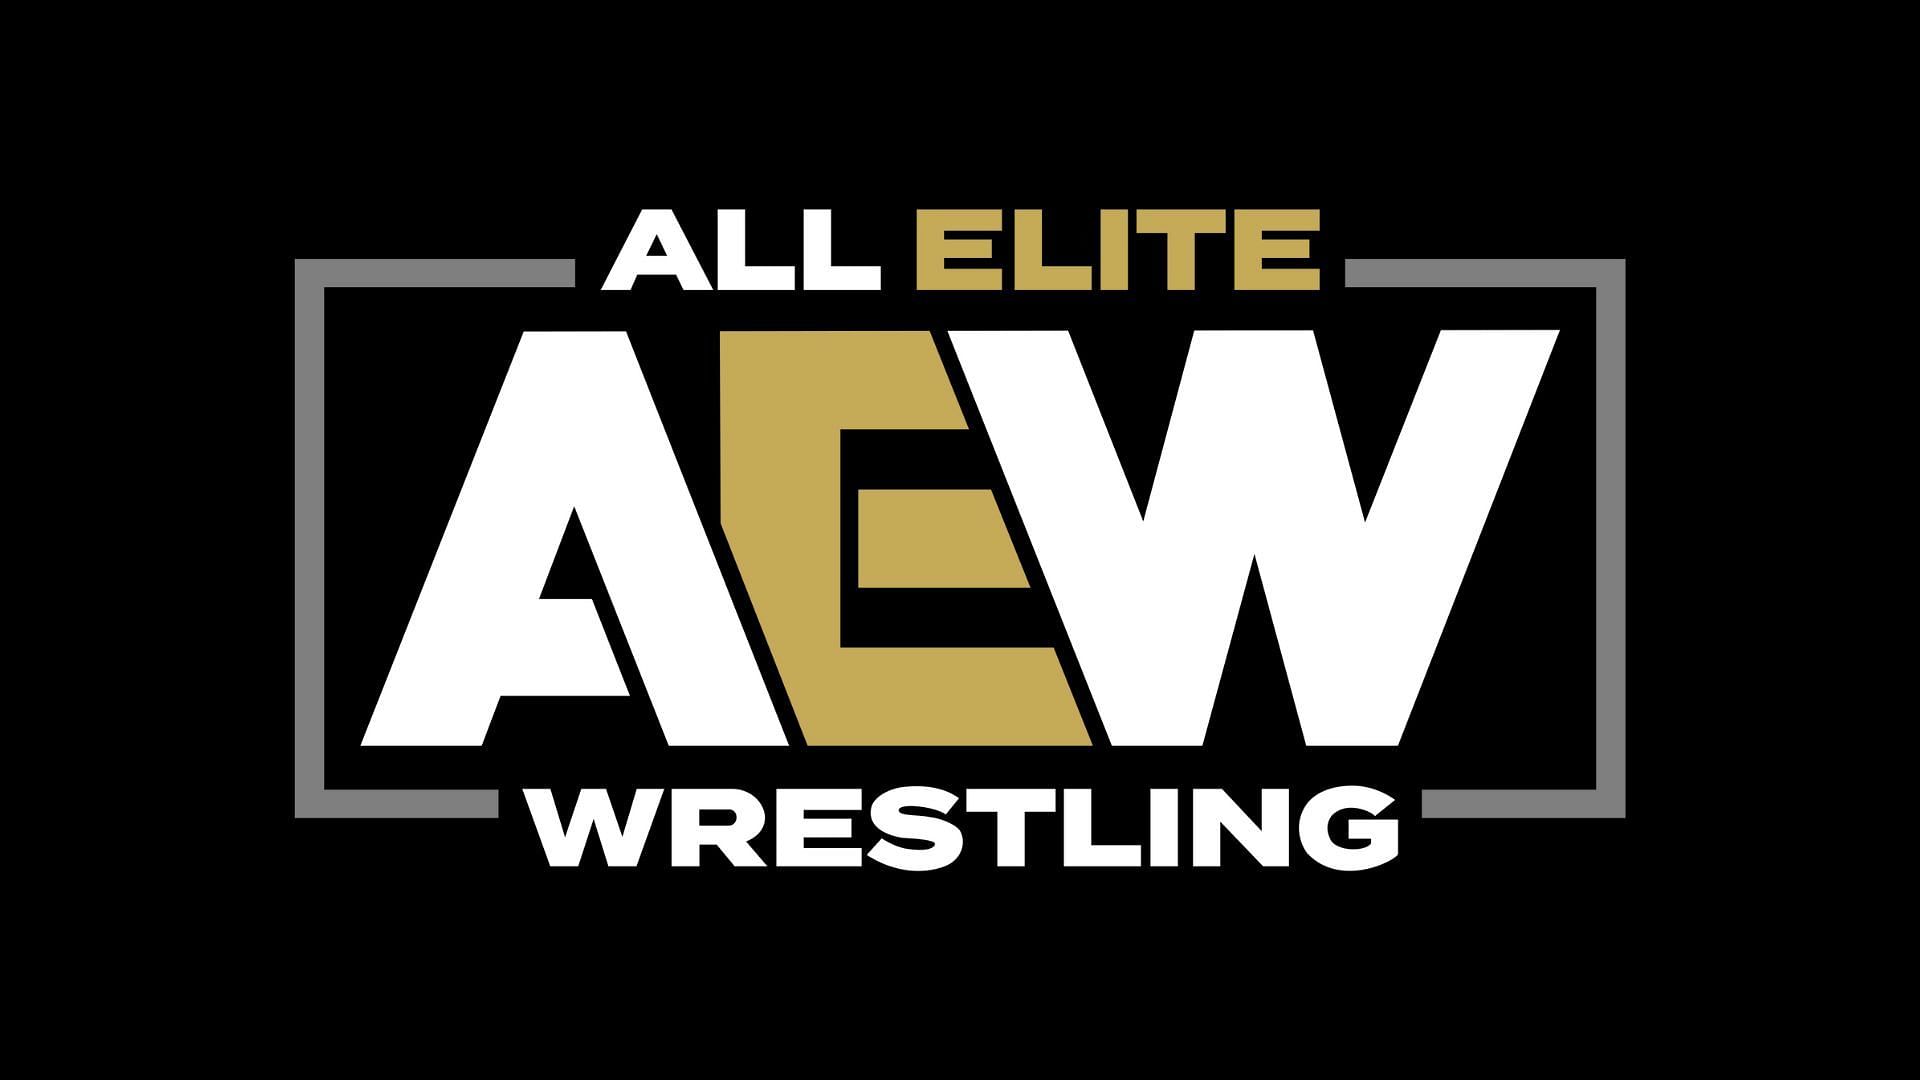 Tony Khan owns All Elite Wrestling (AEW)